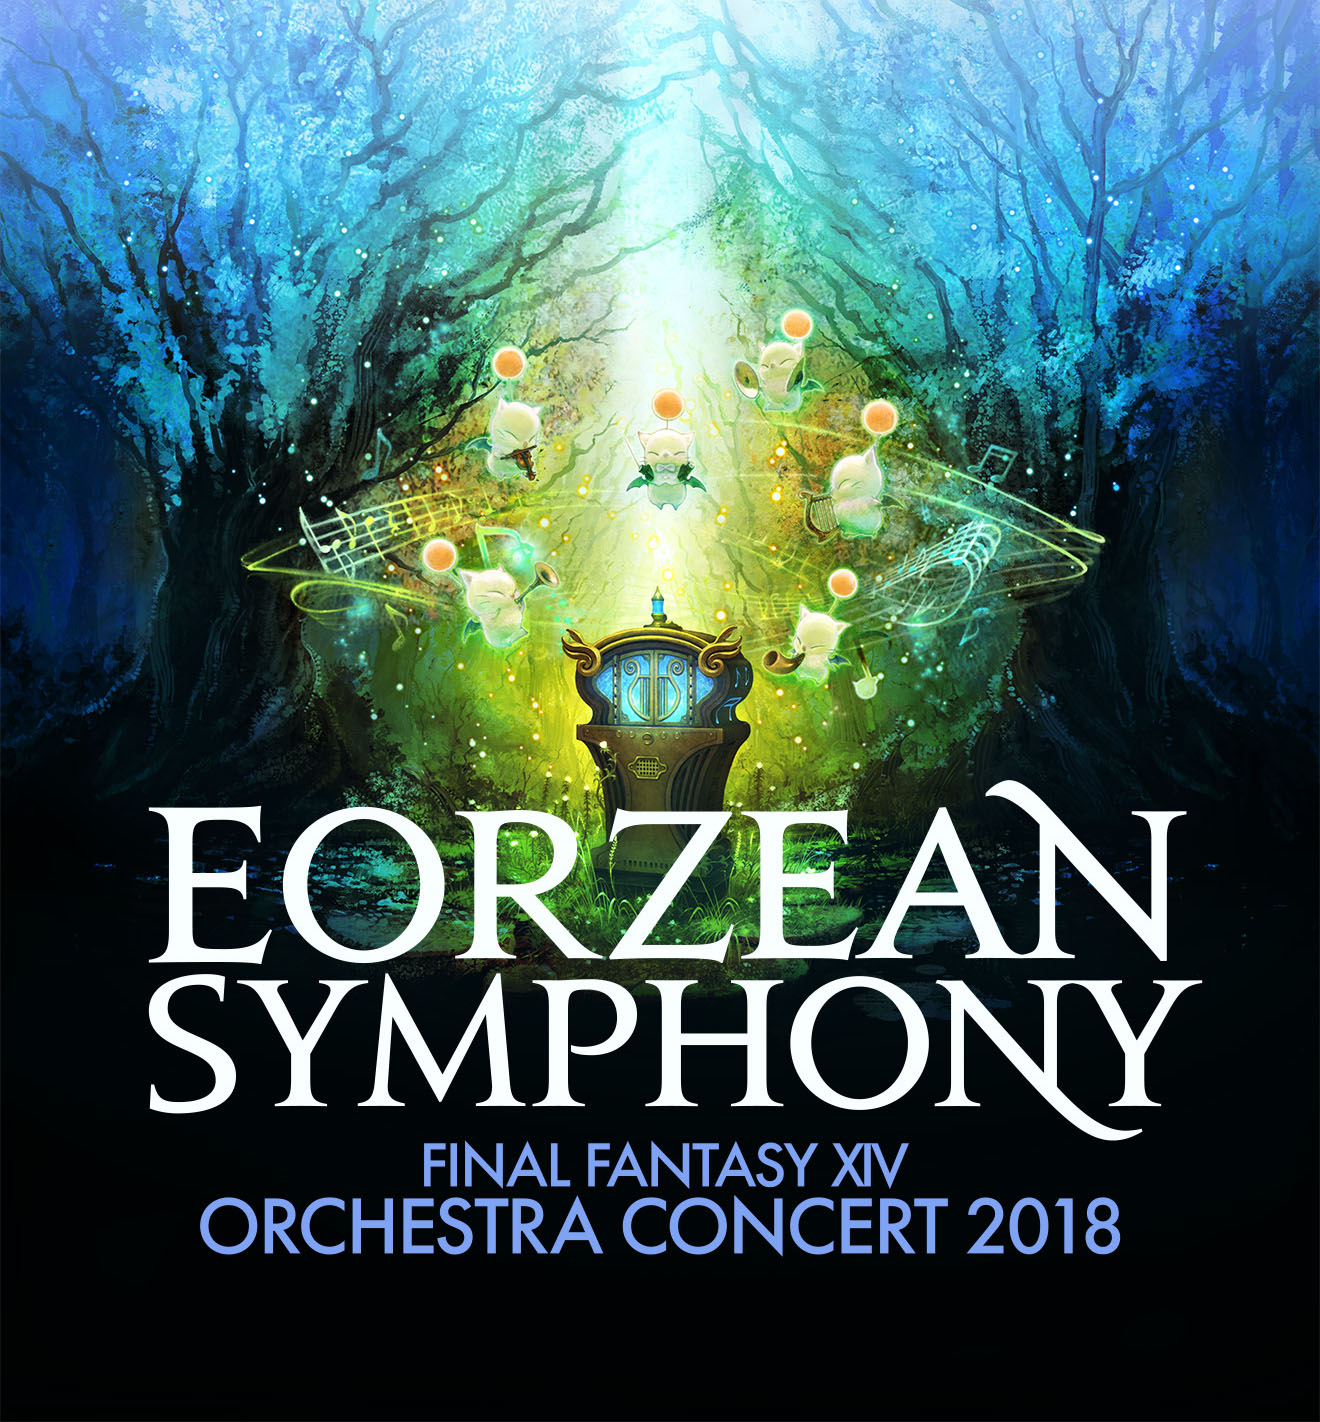 Eorzean Symphony FINAL FANTASY XIV Orchestra Concert 2018 TOPICS